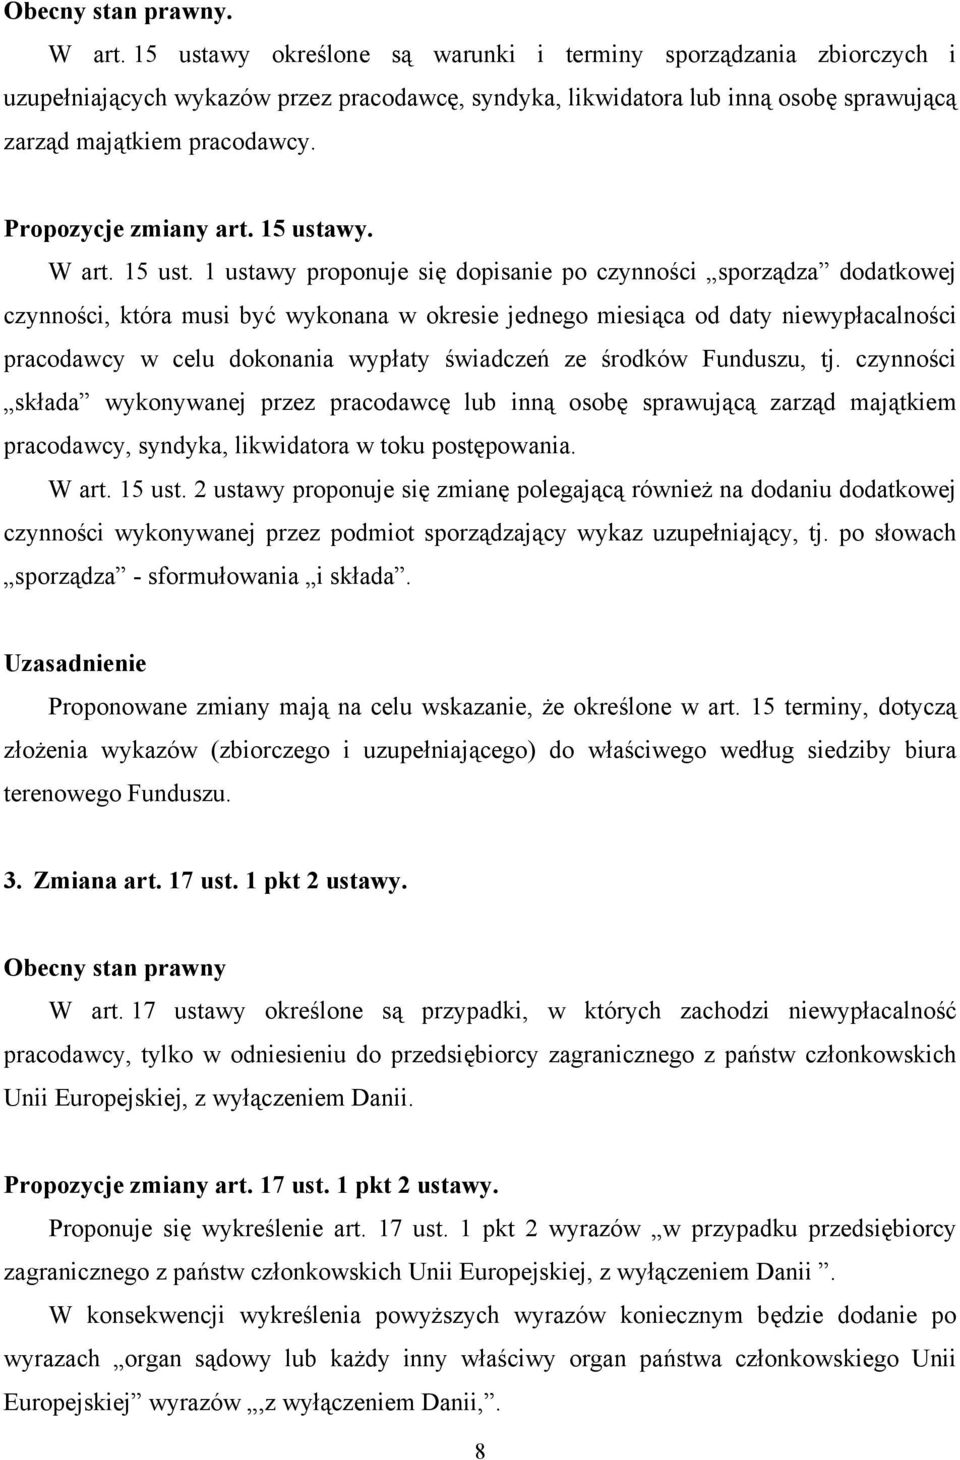 Propozycje zmiany art. 15 usta